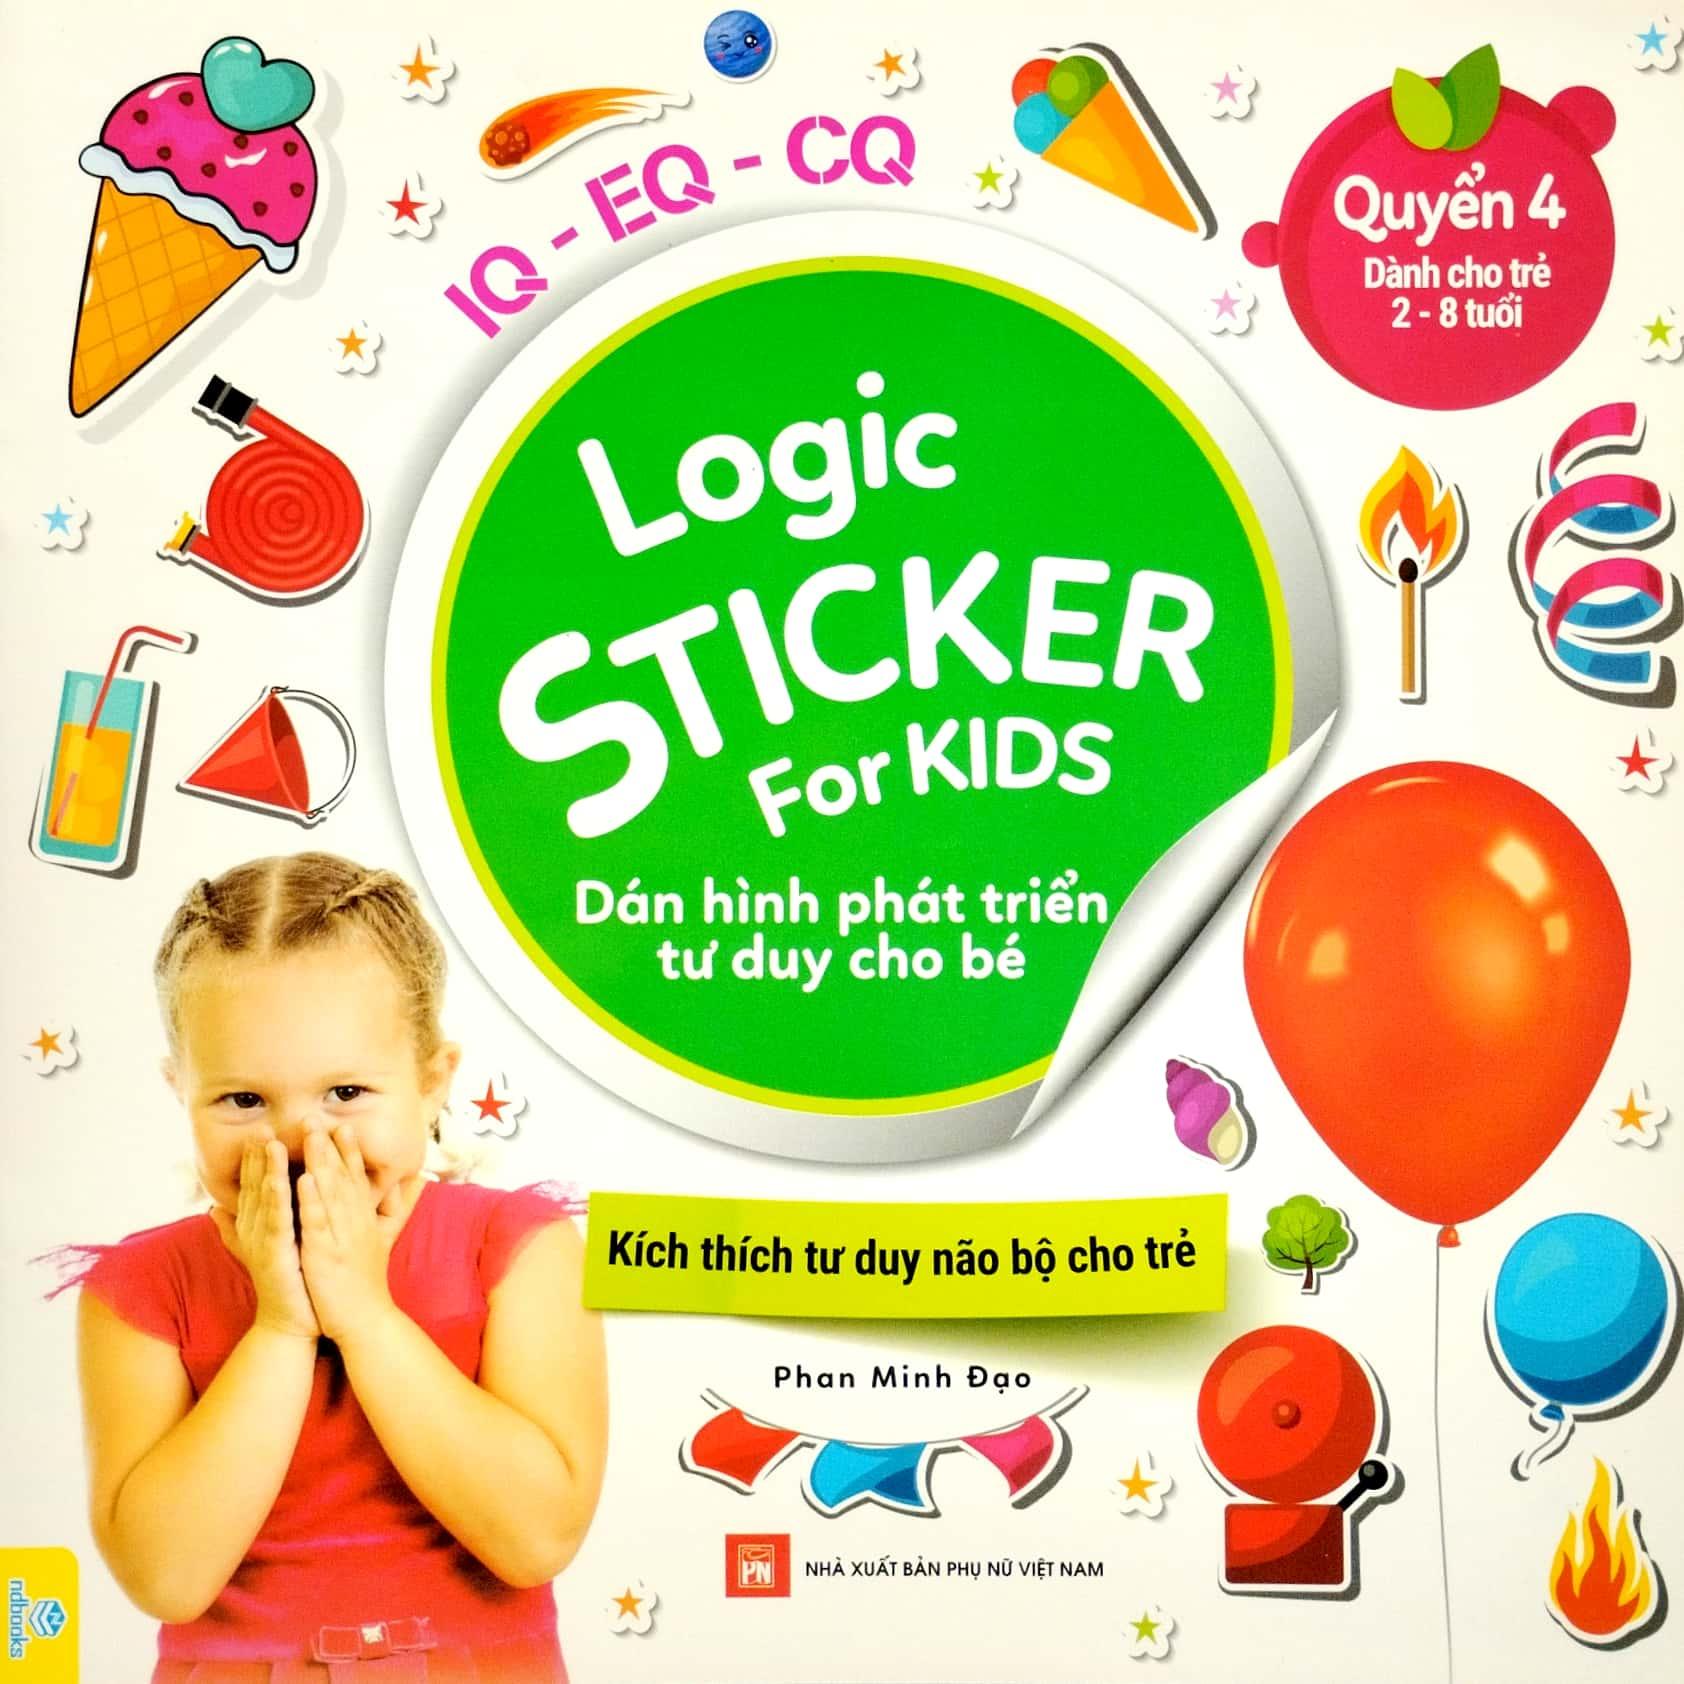 Logic Sticker For Kids - Dán Hình Phát Triển Tư Duy Cho Bé - Quyển 4 (Dành Cho Trẻ 2-8 Tuổi)